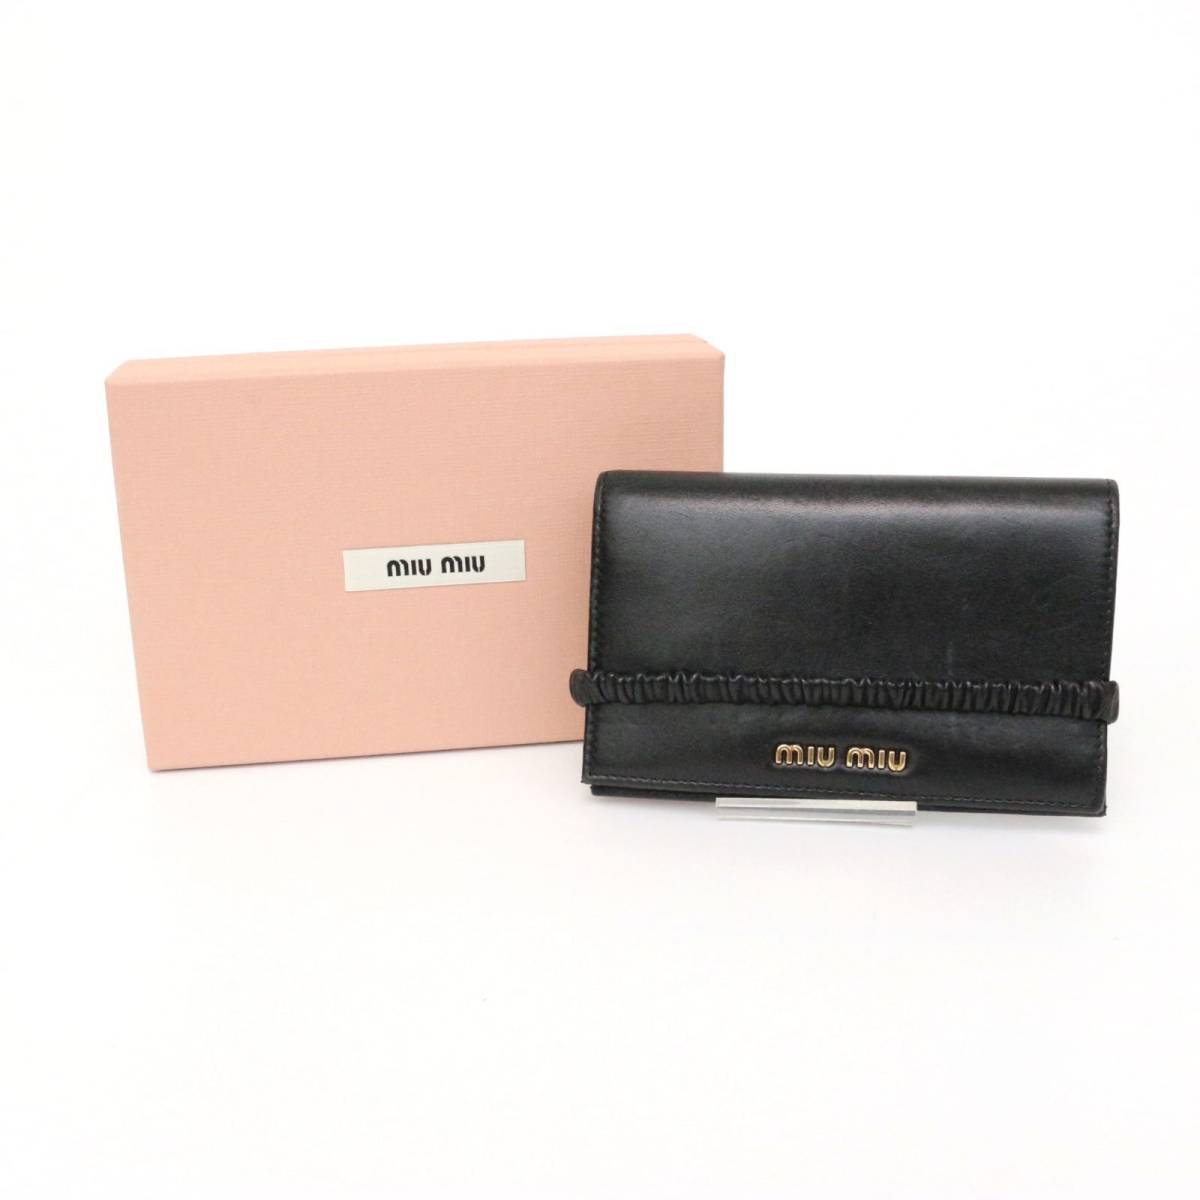 ミュウ ミュウ 5MV024 ギャザー 折り財布 ウォレット folded wallet バンド付き 小さい財布 ナッパ レザー 本革 黒 ブラック  black MIU MIU